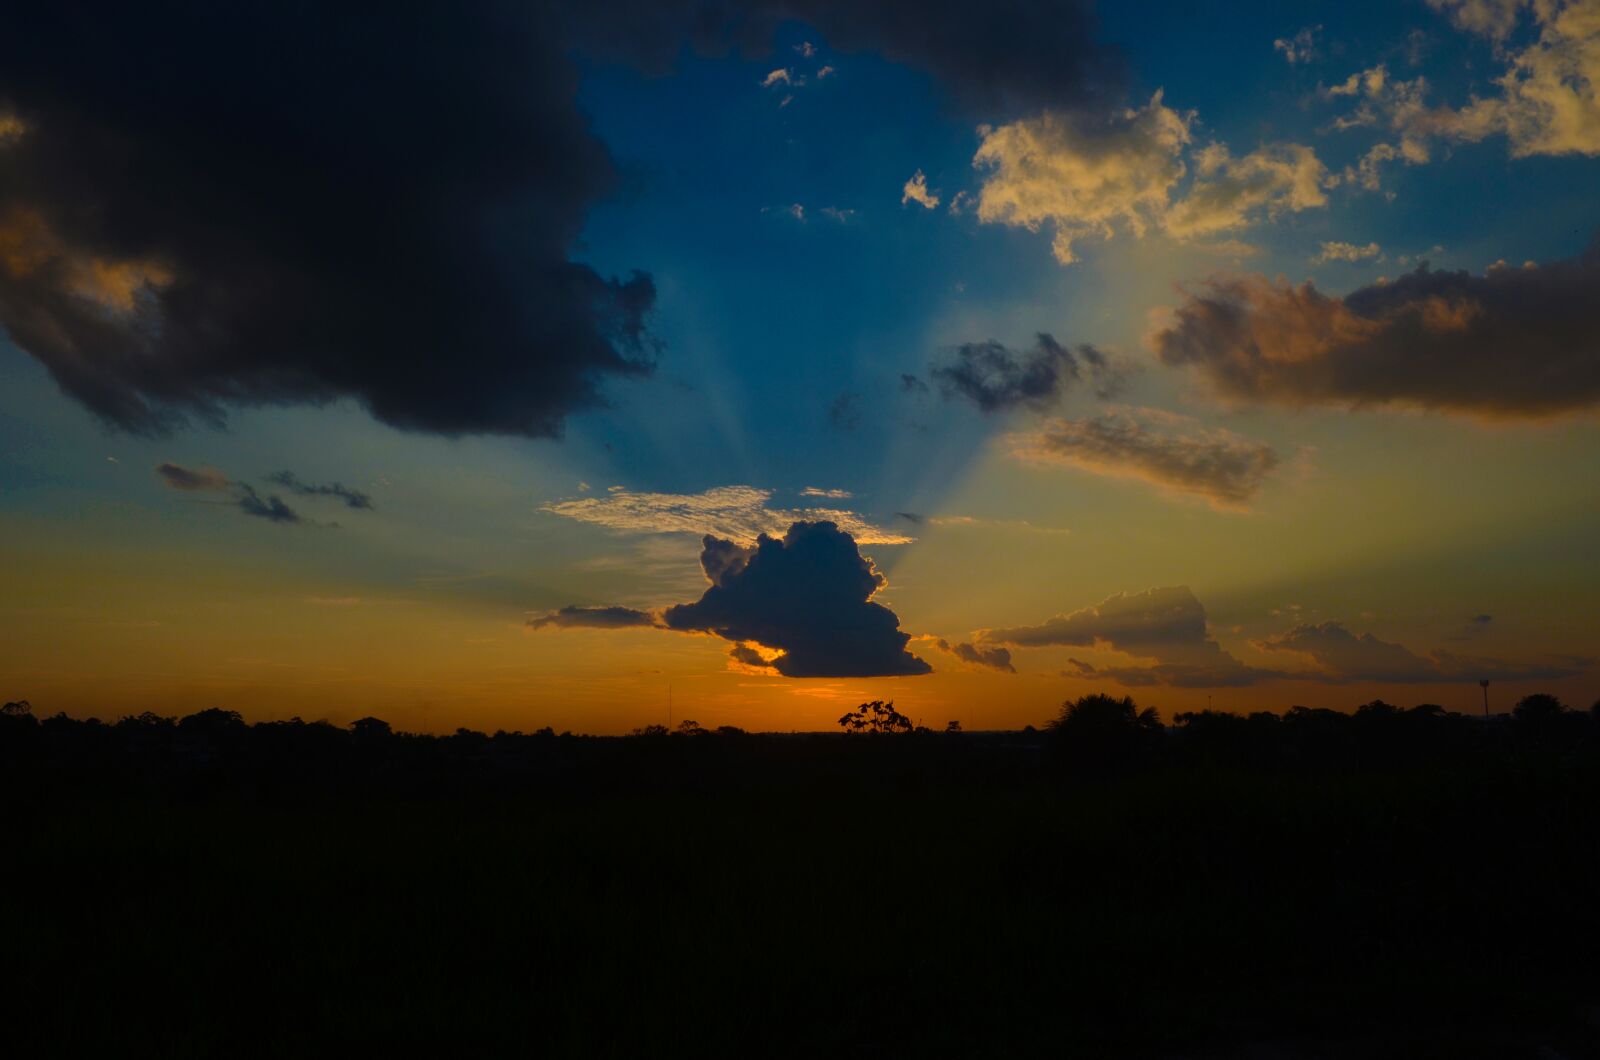 Nikon D7000 sample photo. Sunset, panoramic, nature photography